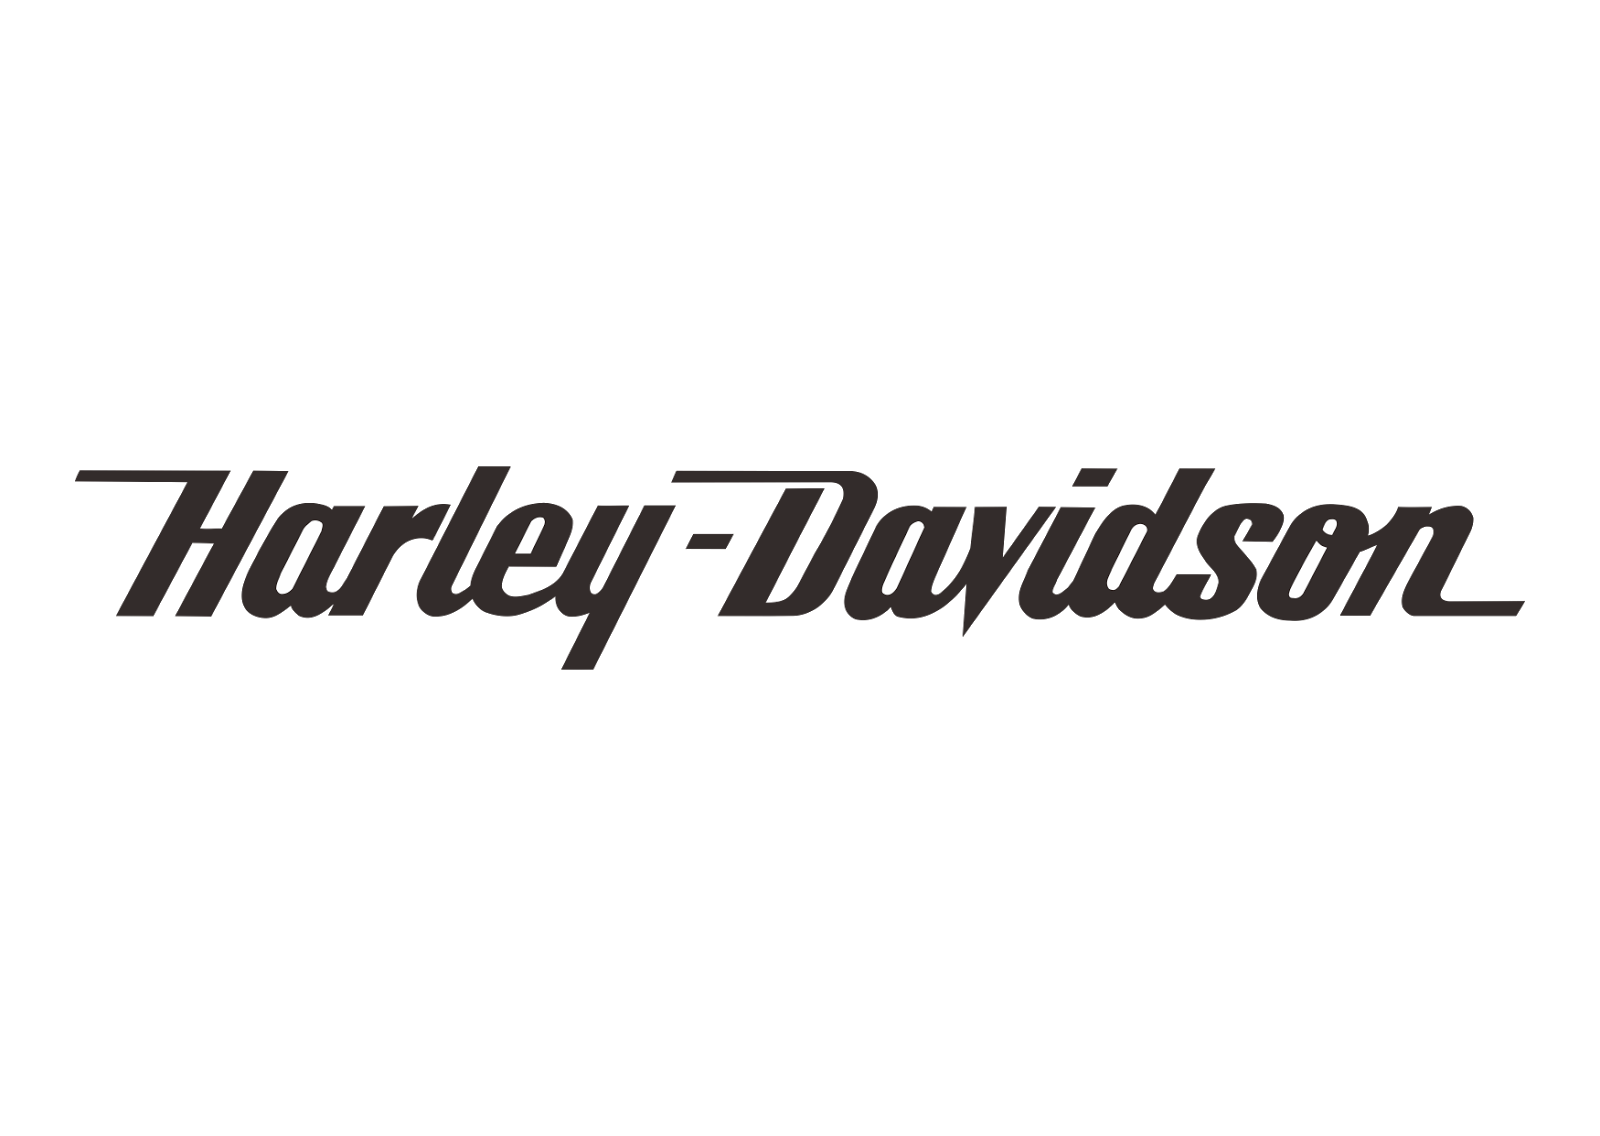 Harley Davidson (text) Logo Vector Black White ~ Free Vector Logos 